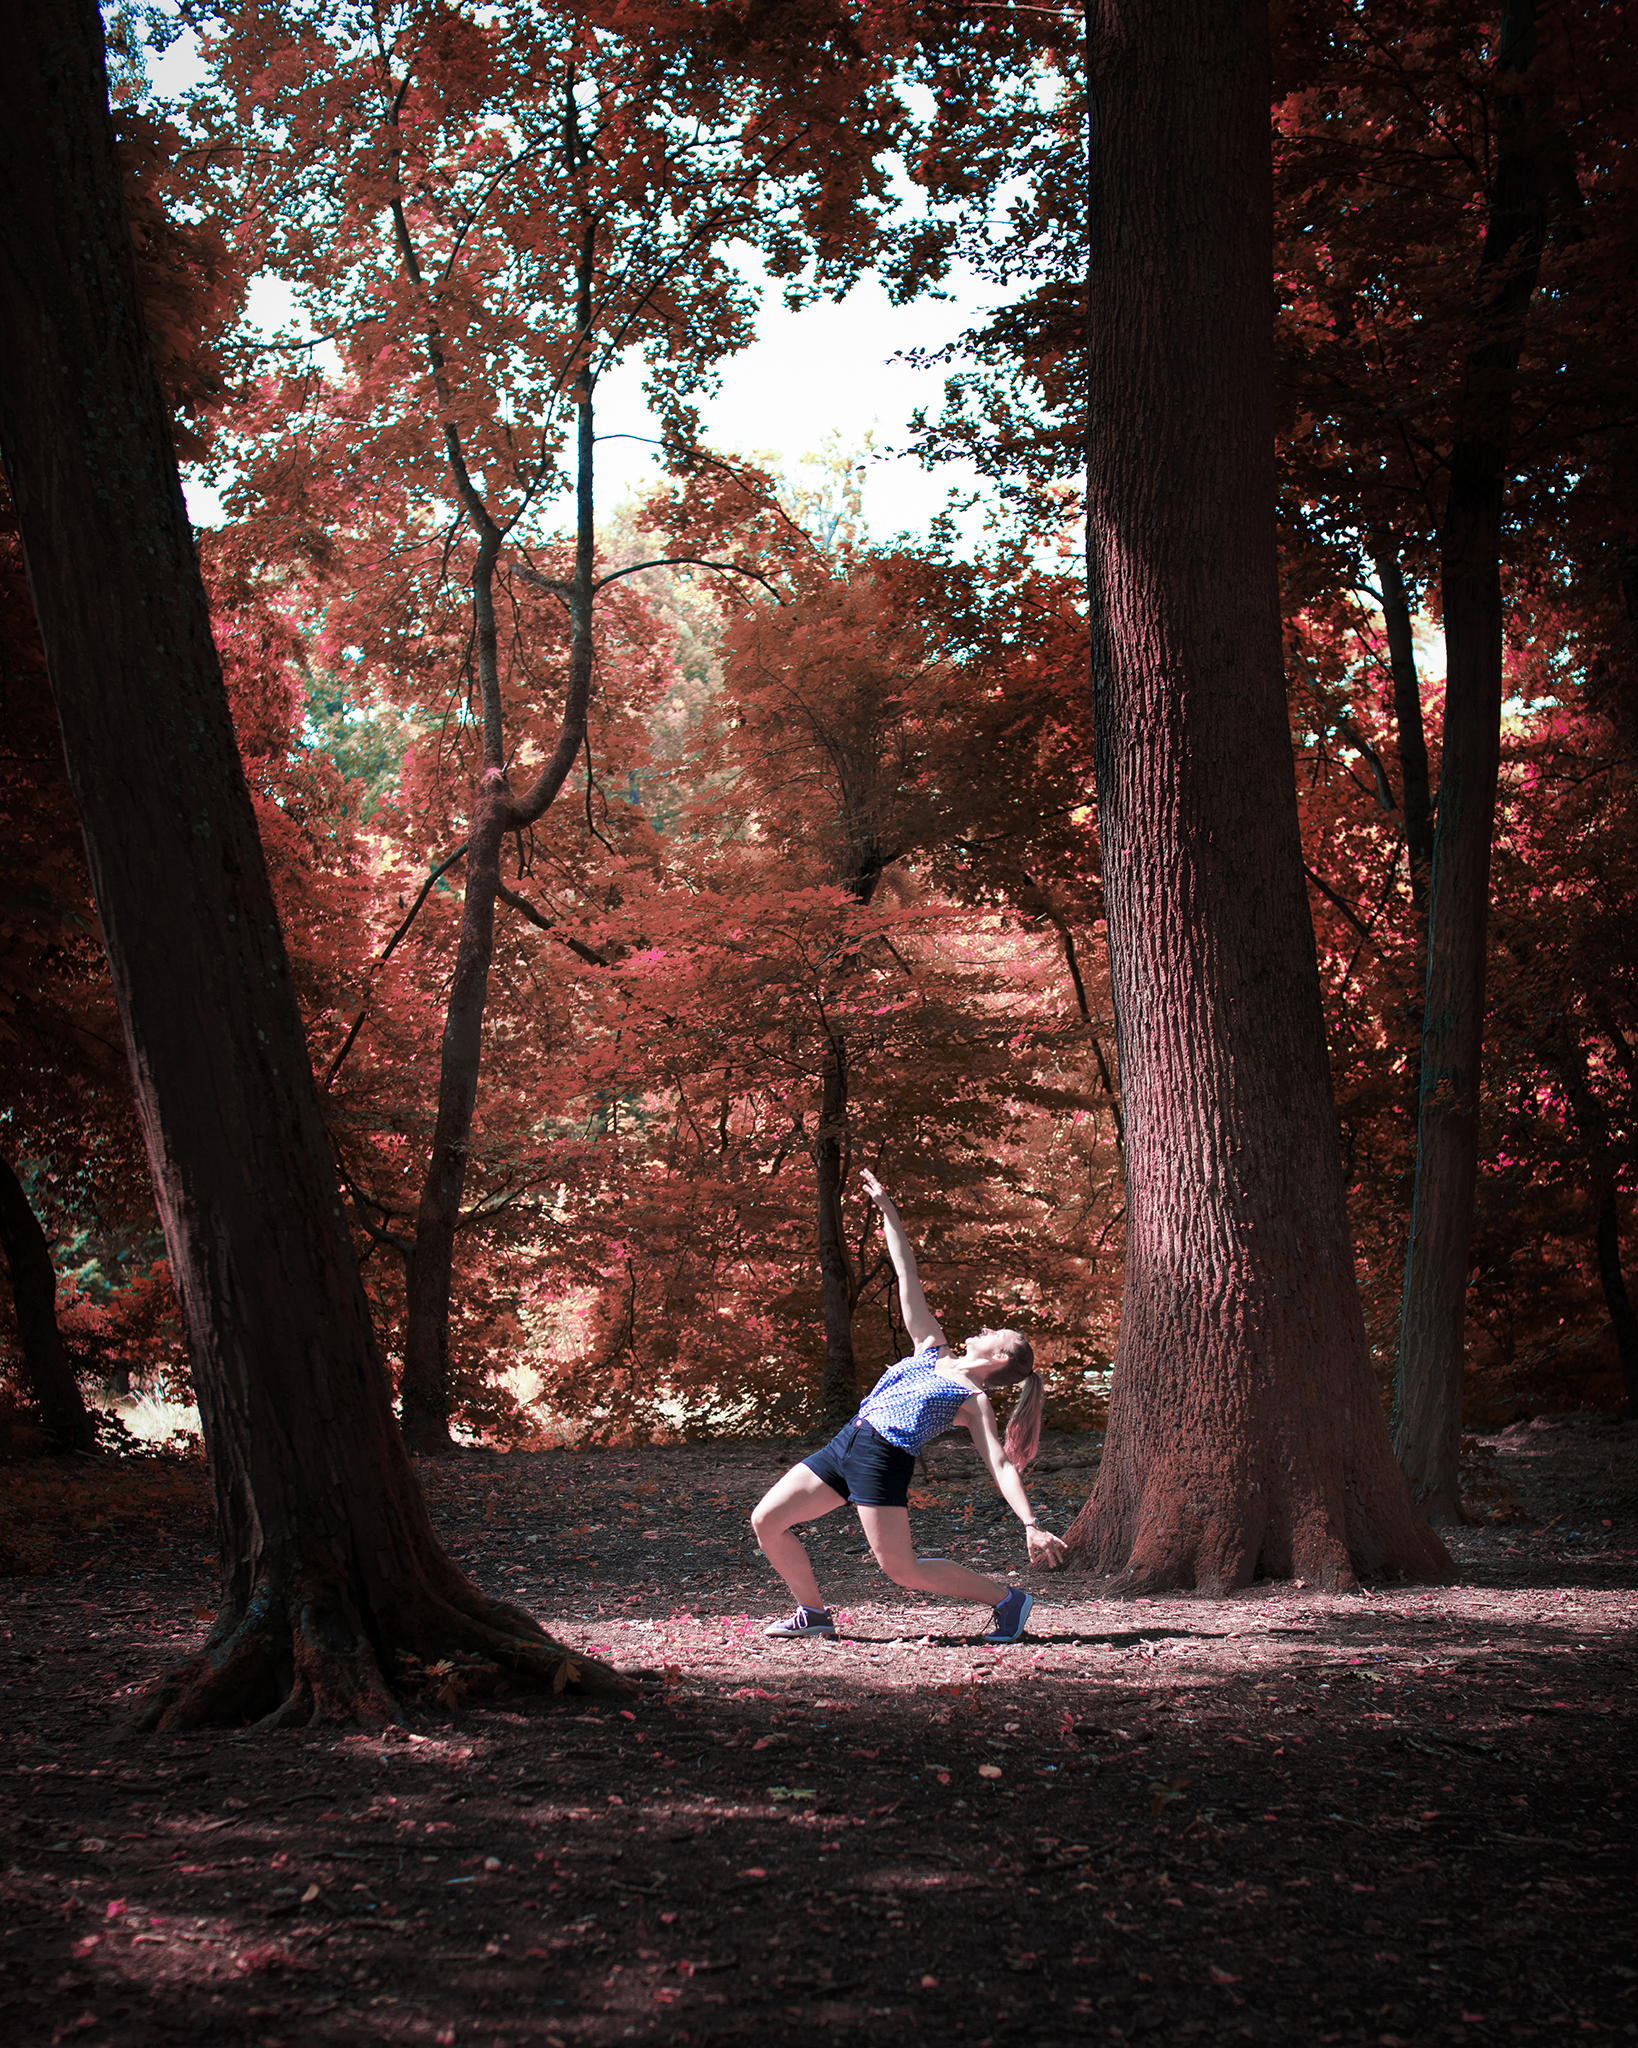 Photographie couleur d'une danseuse, mise en scène dans une forêt au couleur de l'automne